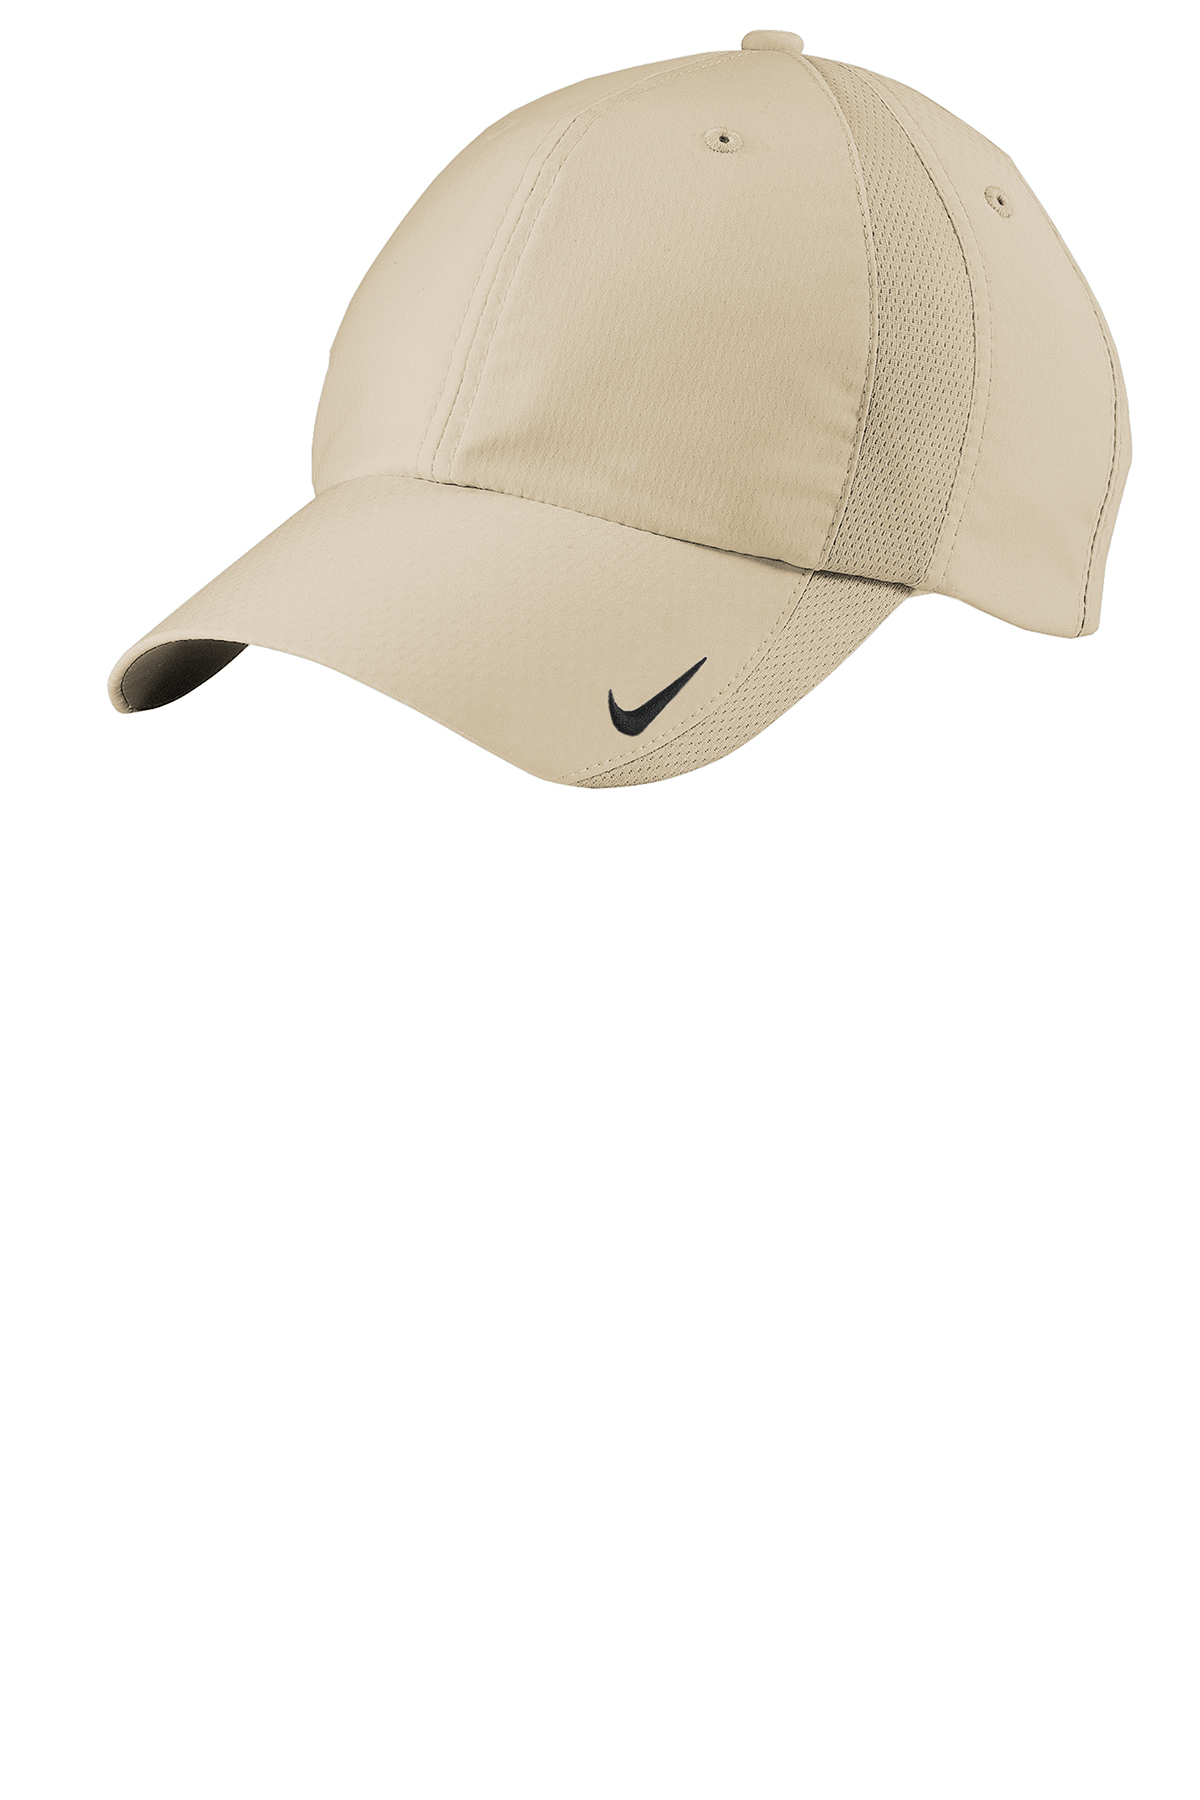 Nike Sphere Dry Cap | Product | SanMar